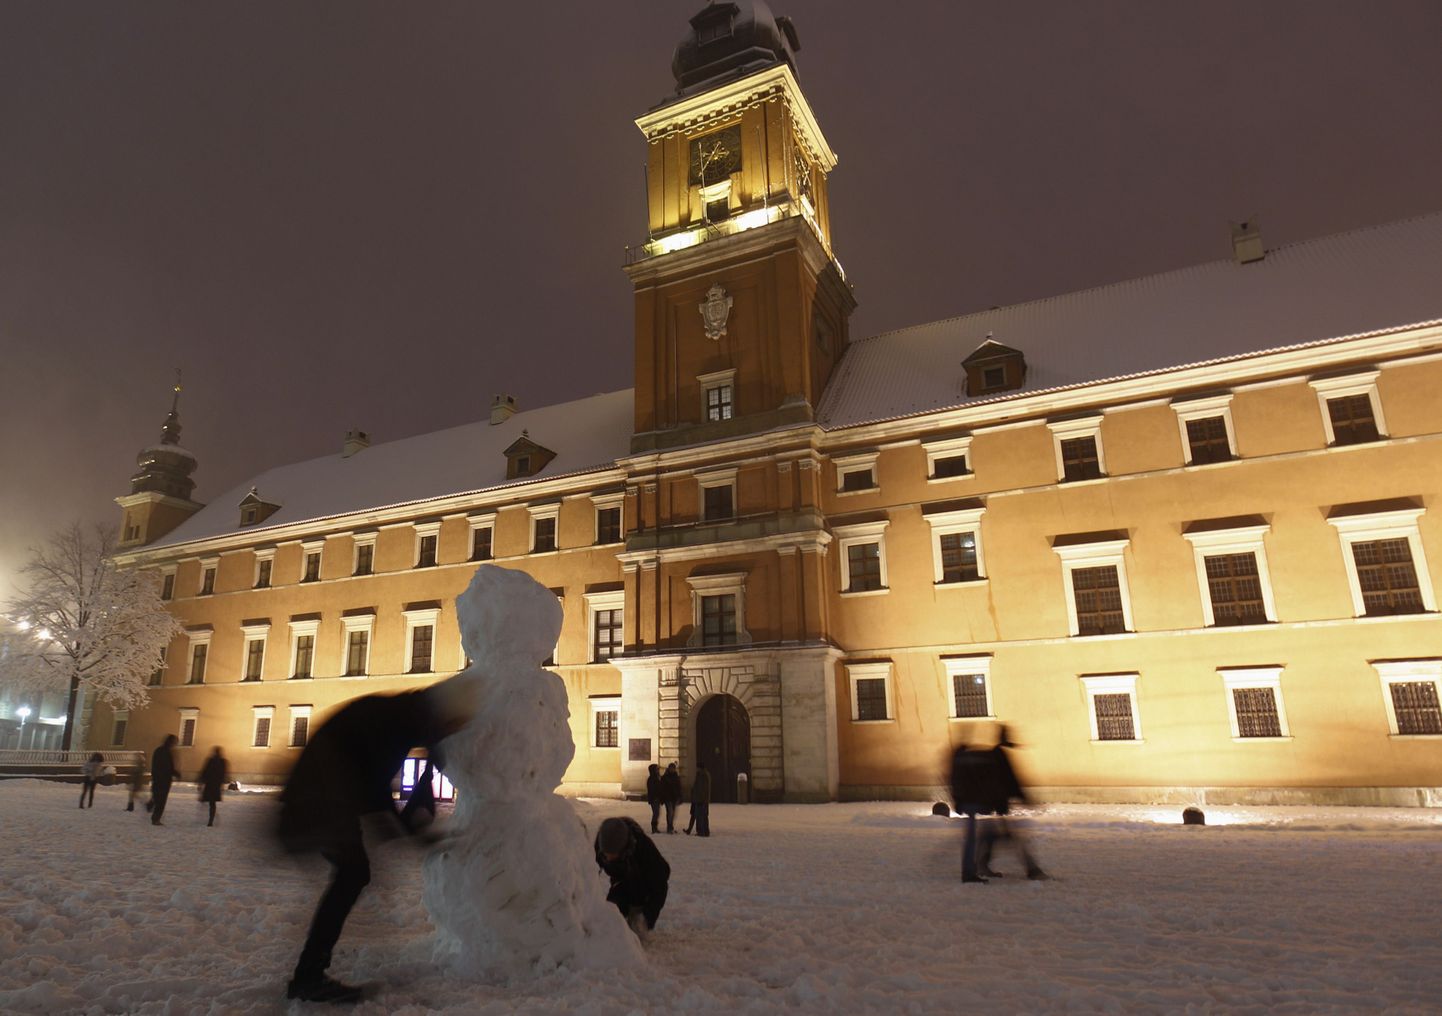 Inimesed ehitavad Varssavi kuningalossi ees lumememme ja seda pärast eilset tugevat lumesadu.